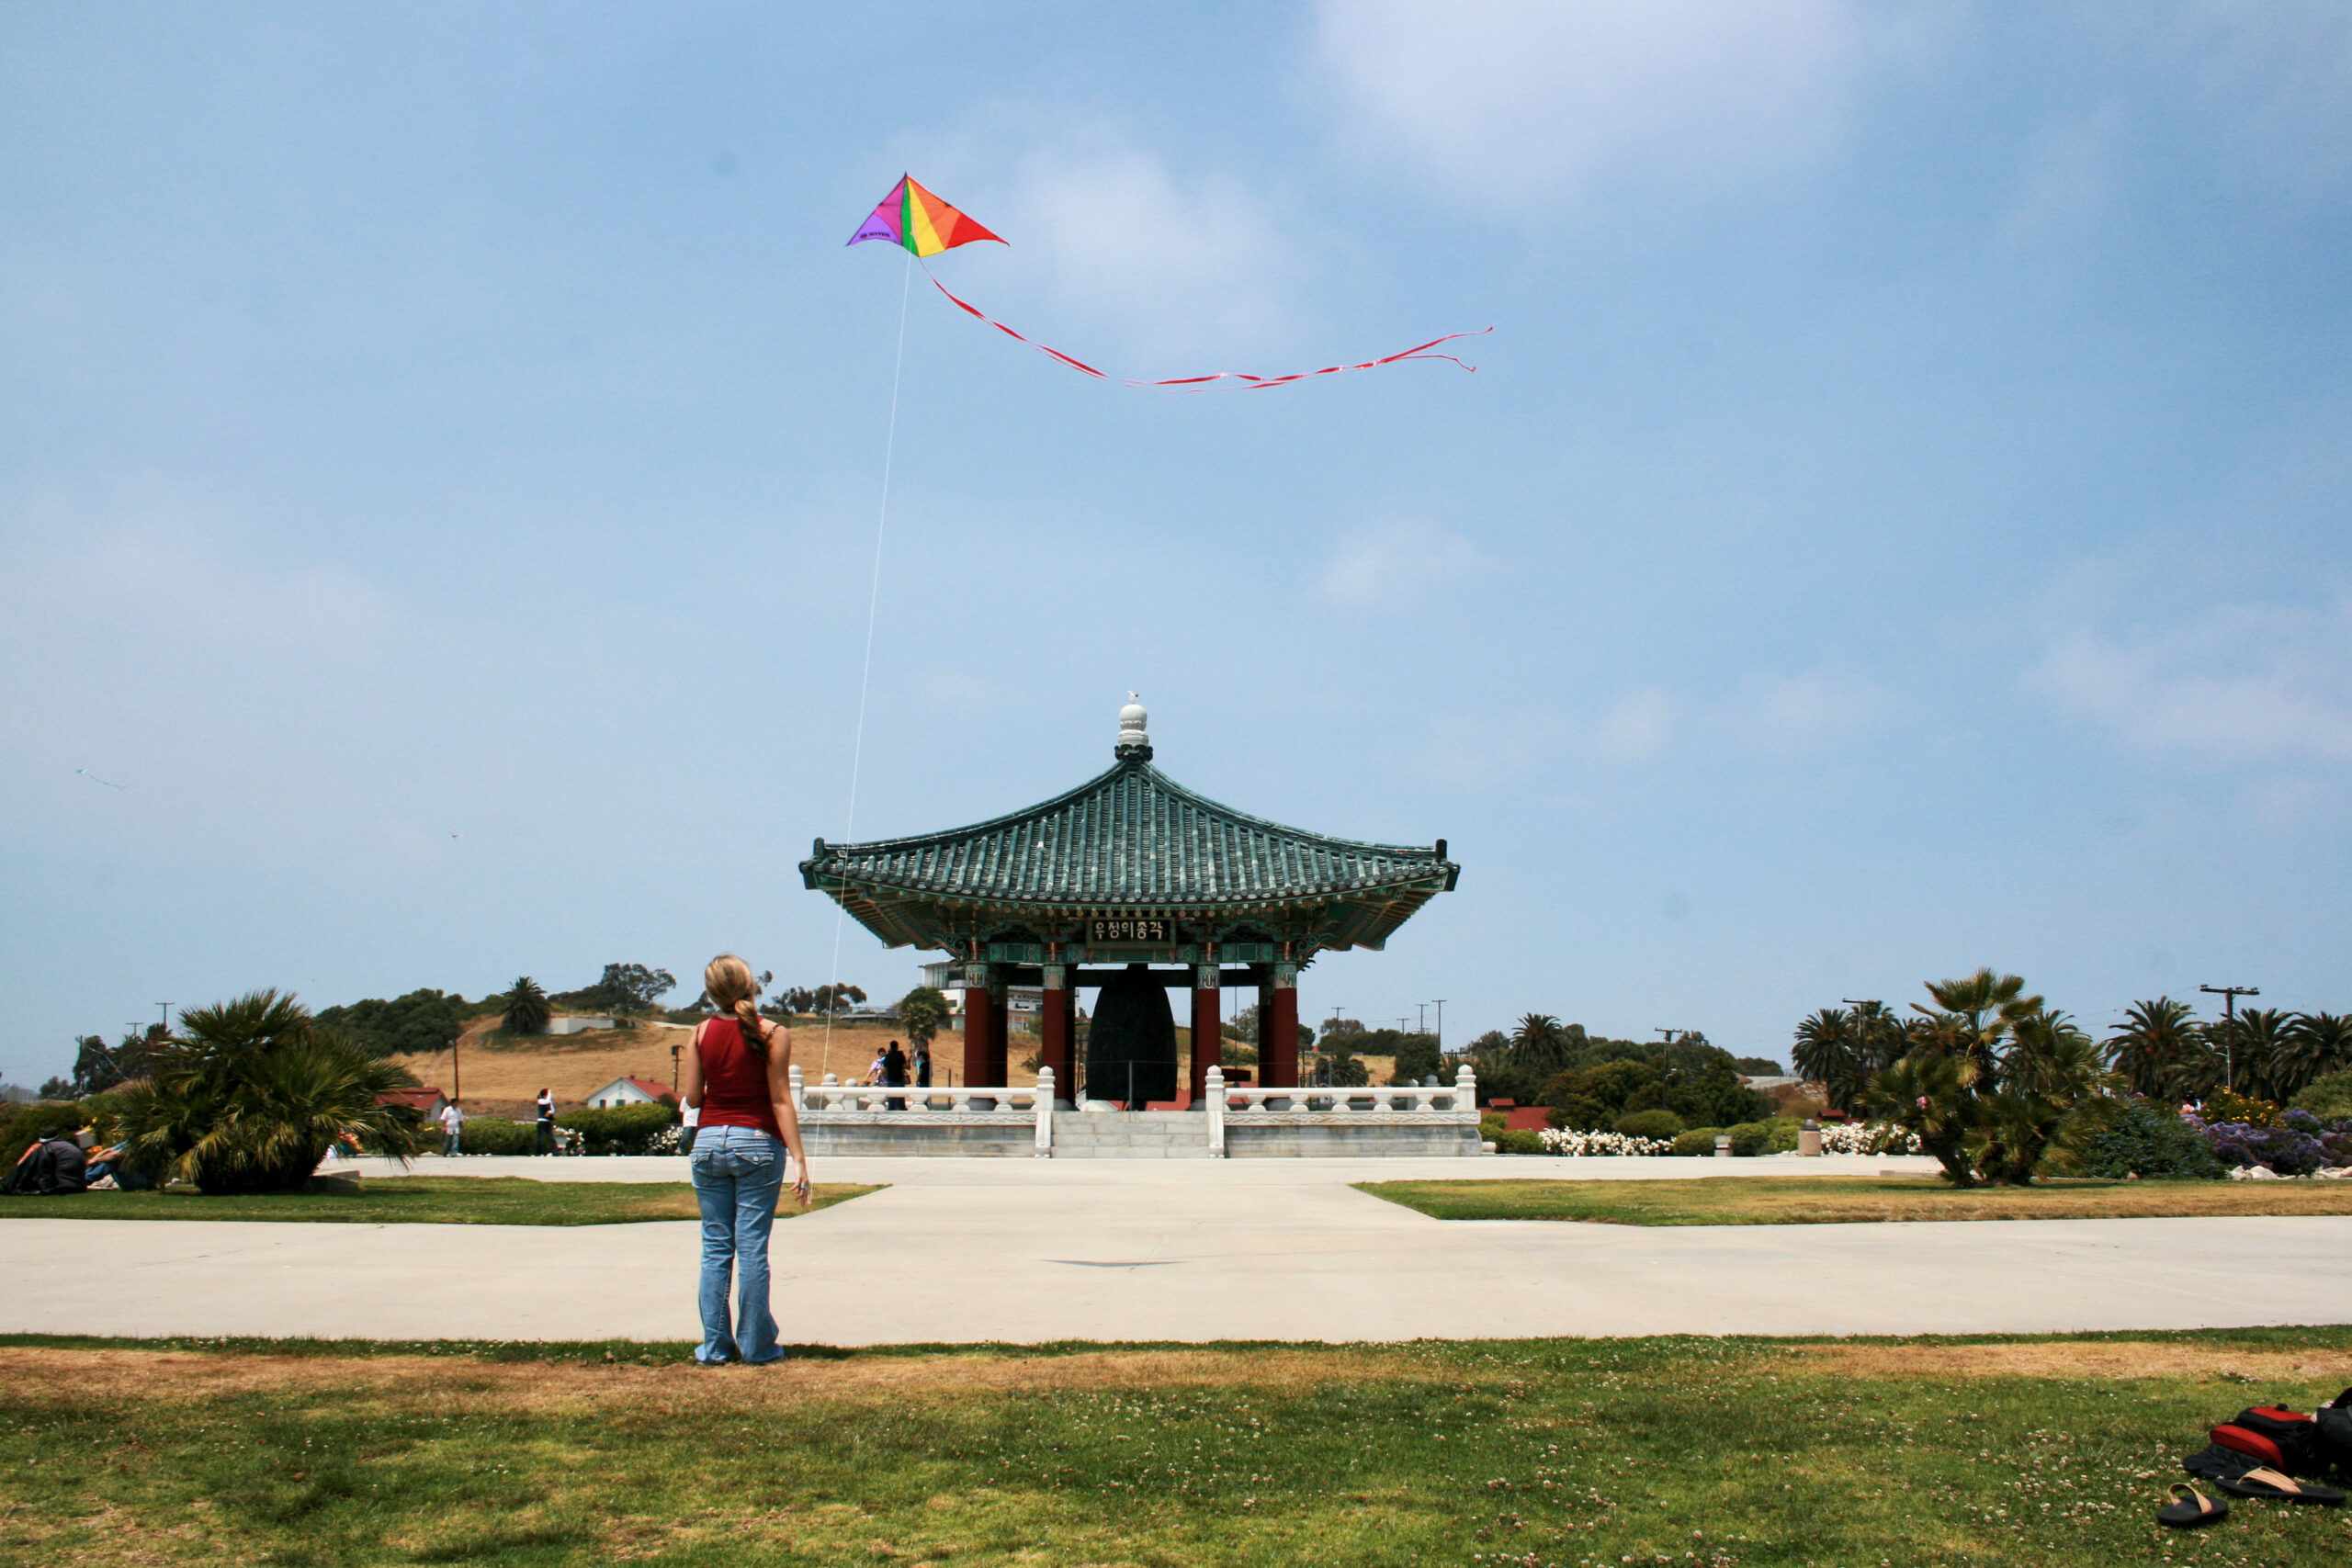 Korean Bell of Friendship Kite Flying